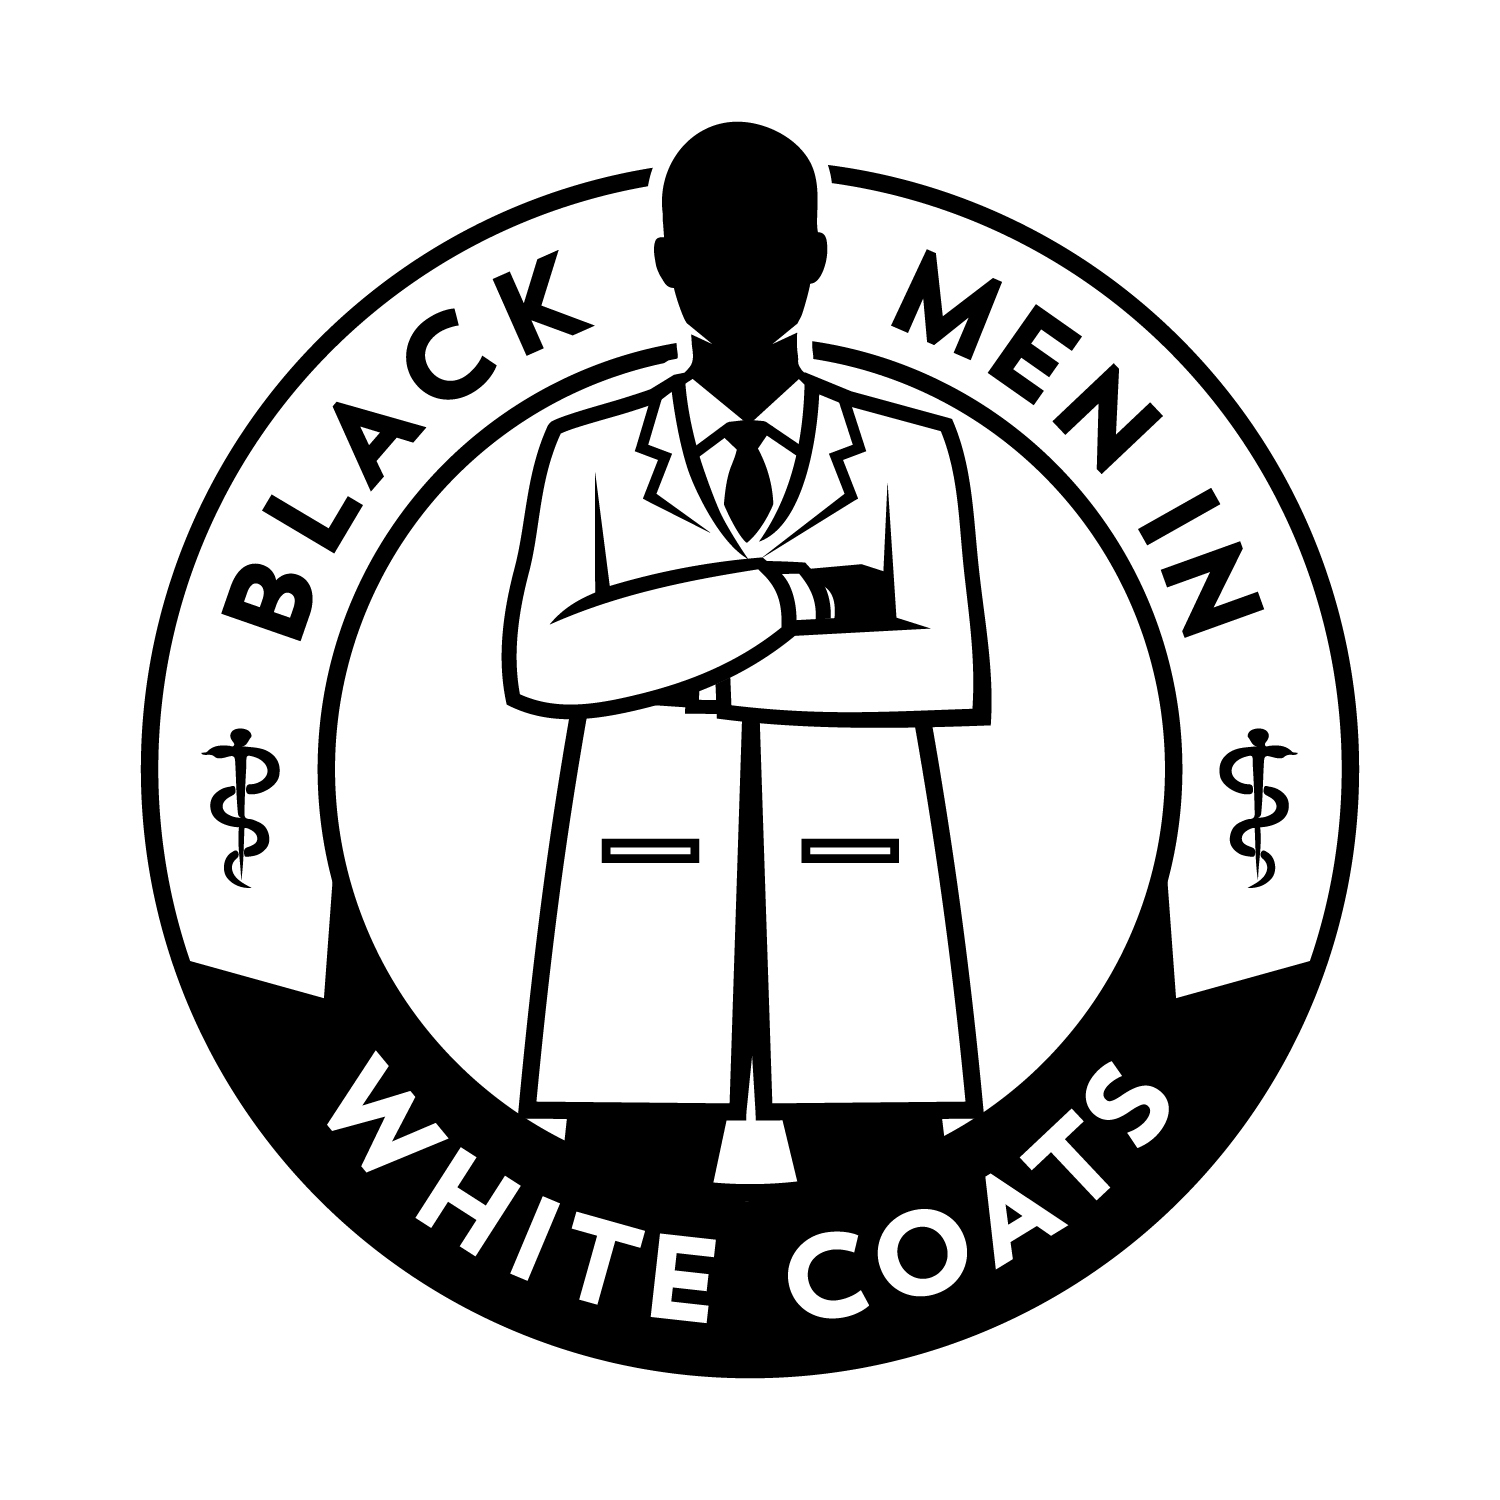 Black Men in White Coats seal/logo